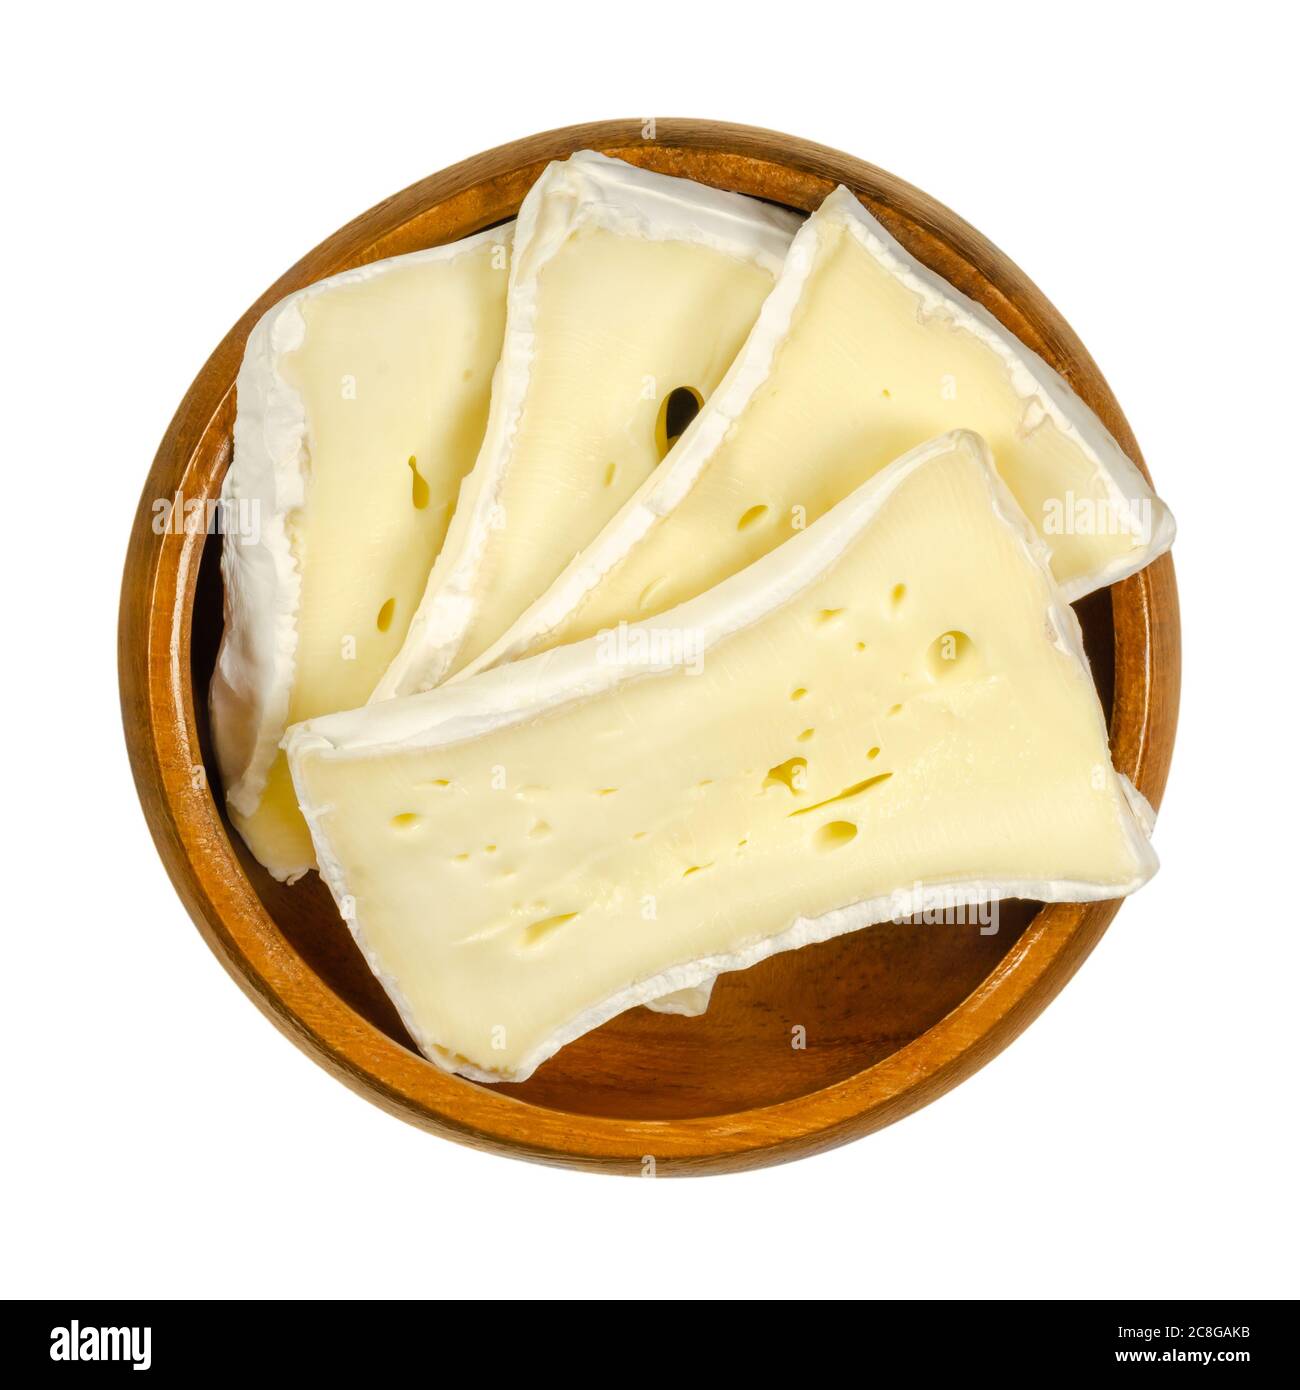 Fette di formaggio a muffa molle in un recipiente di legno. Formaggio cremoso umido, fatto di latte vaccino, maturato sulla superficie con un fungo speciale. Camembert o Brie. Foto Stock